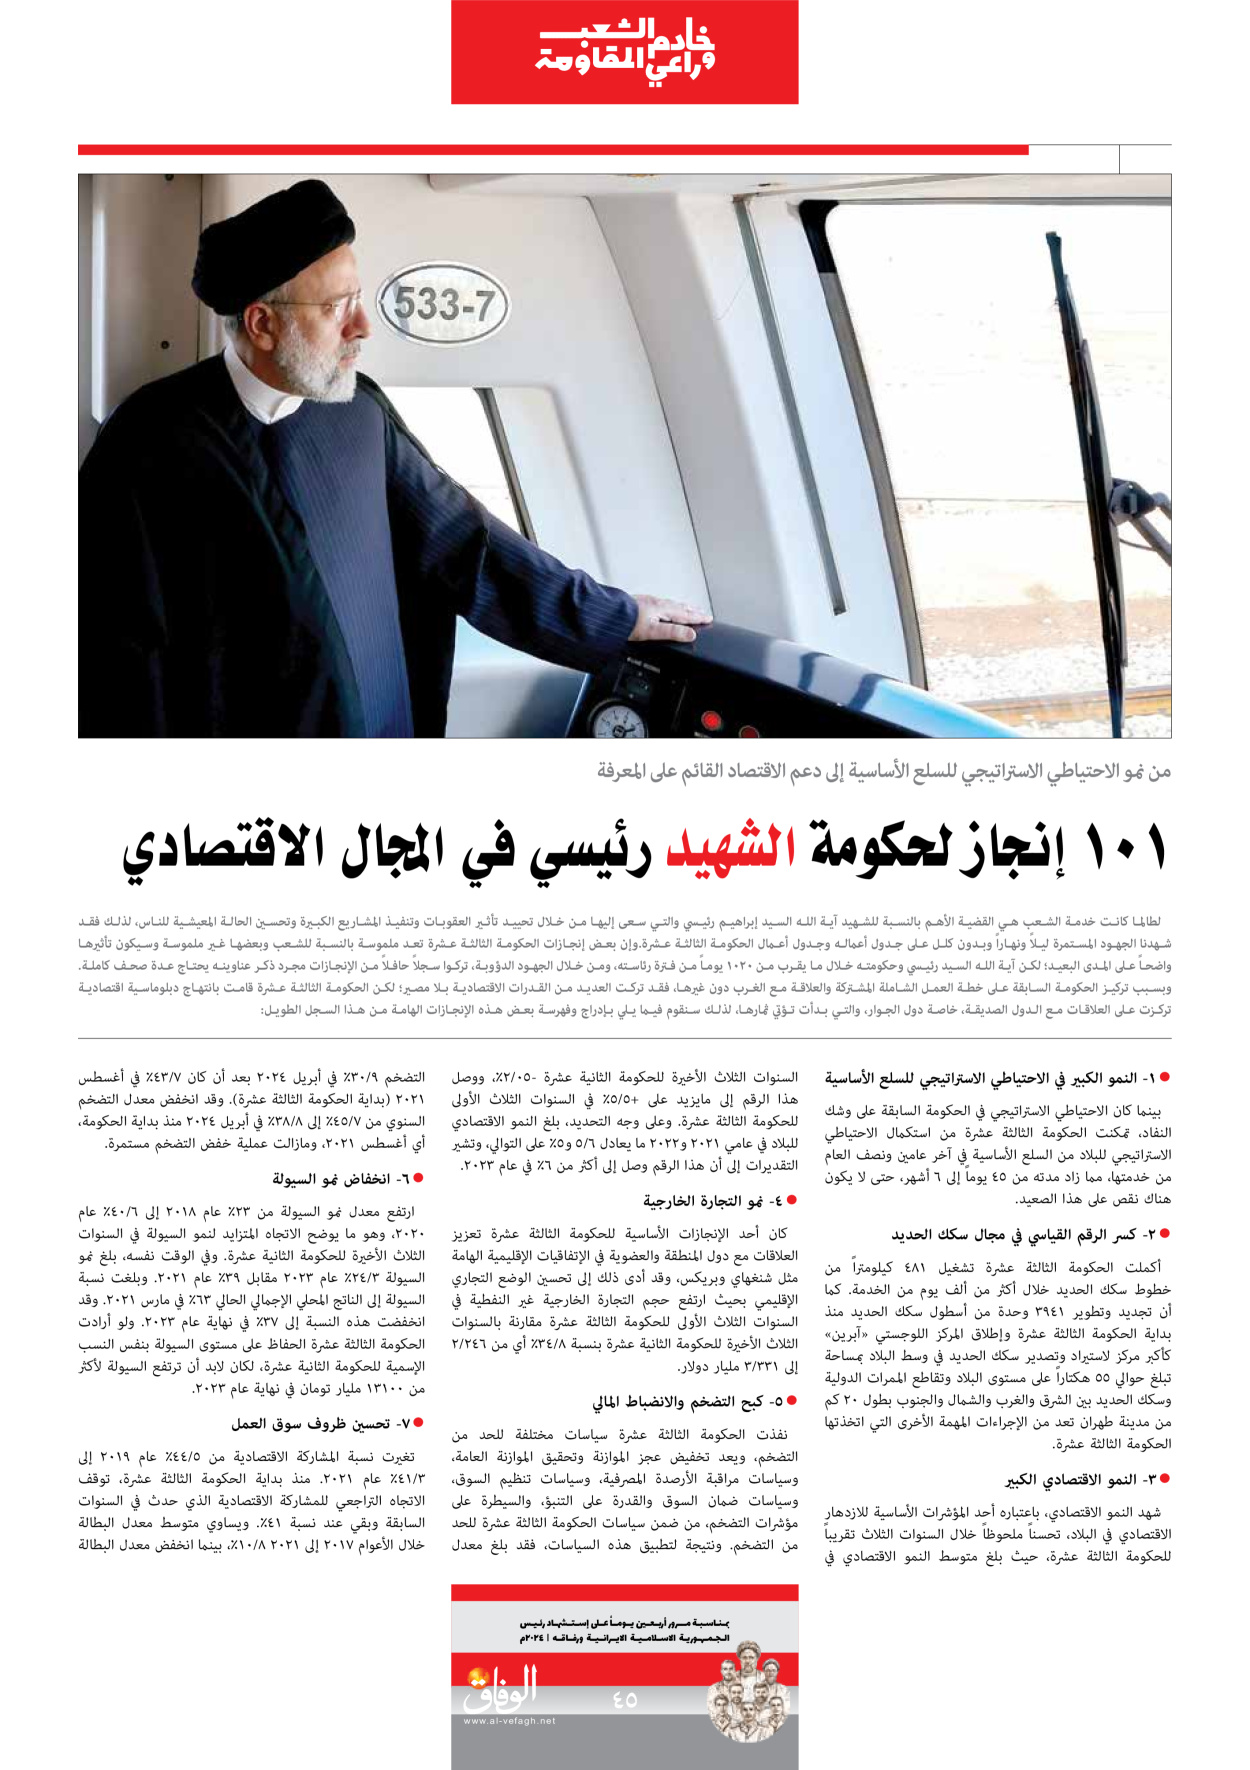 صحیفة ایران الدولیة الوفاق - ملحق ویژه نامه چهلم شهید رییسی - ٢٩ يونيو ٢٠٢٤ - الصفحة ٤٥